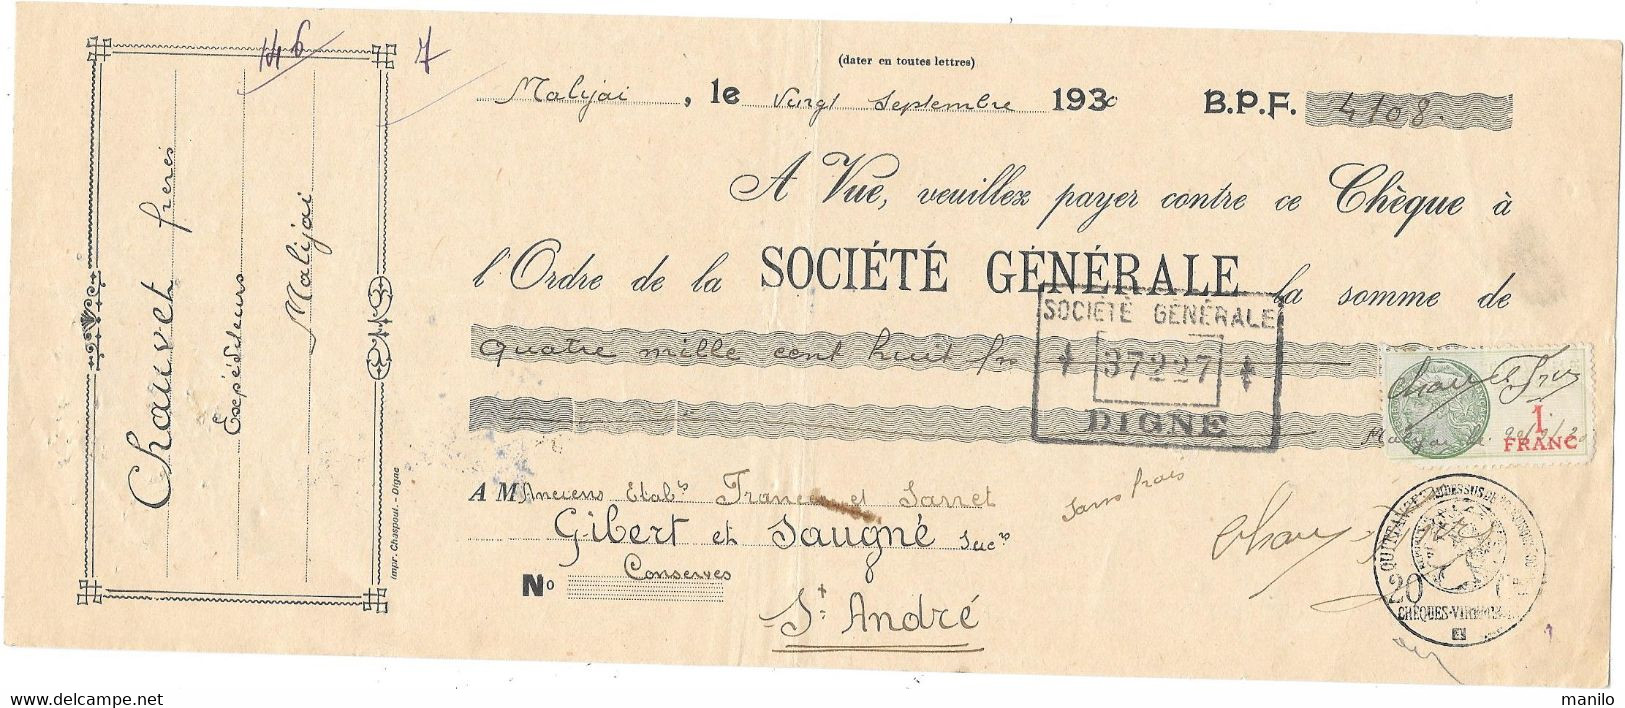 Chèques And Chèques De Voyage Cheque 1930 Chauvet Frères Expéditeurs Malijai Gibert 7943